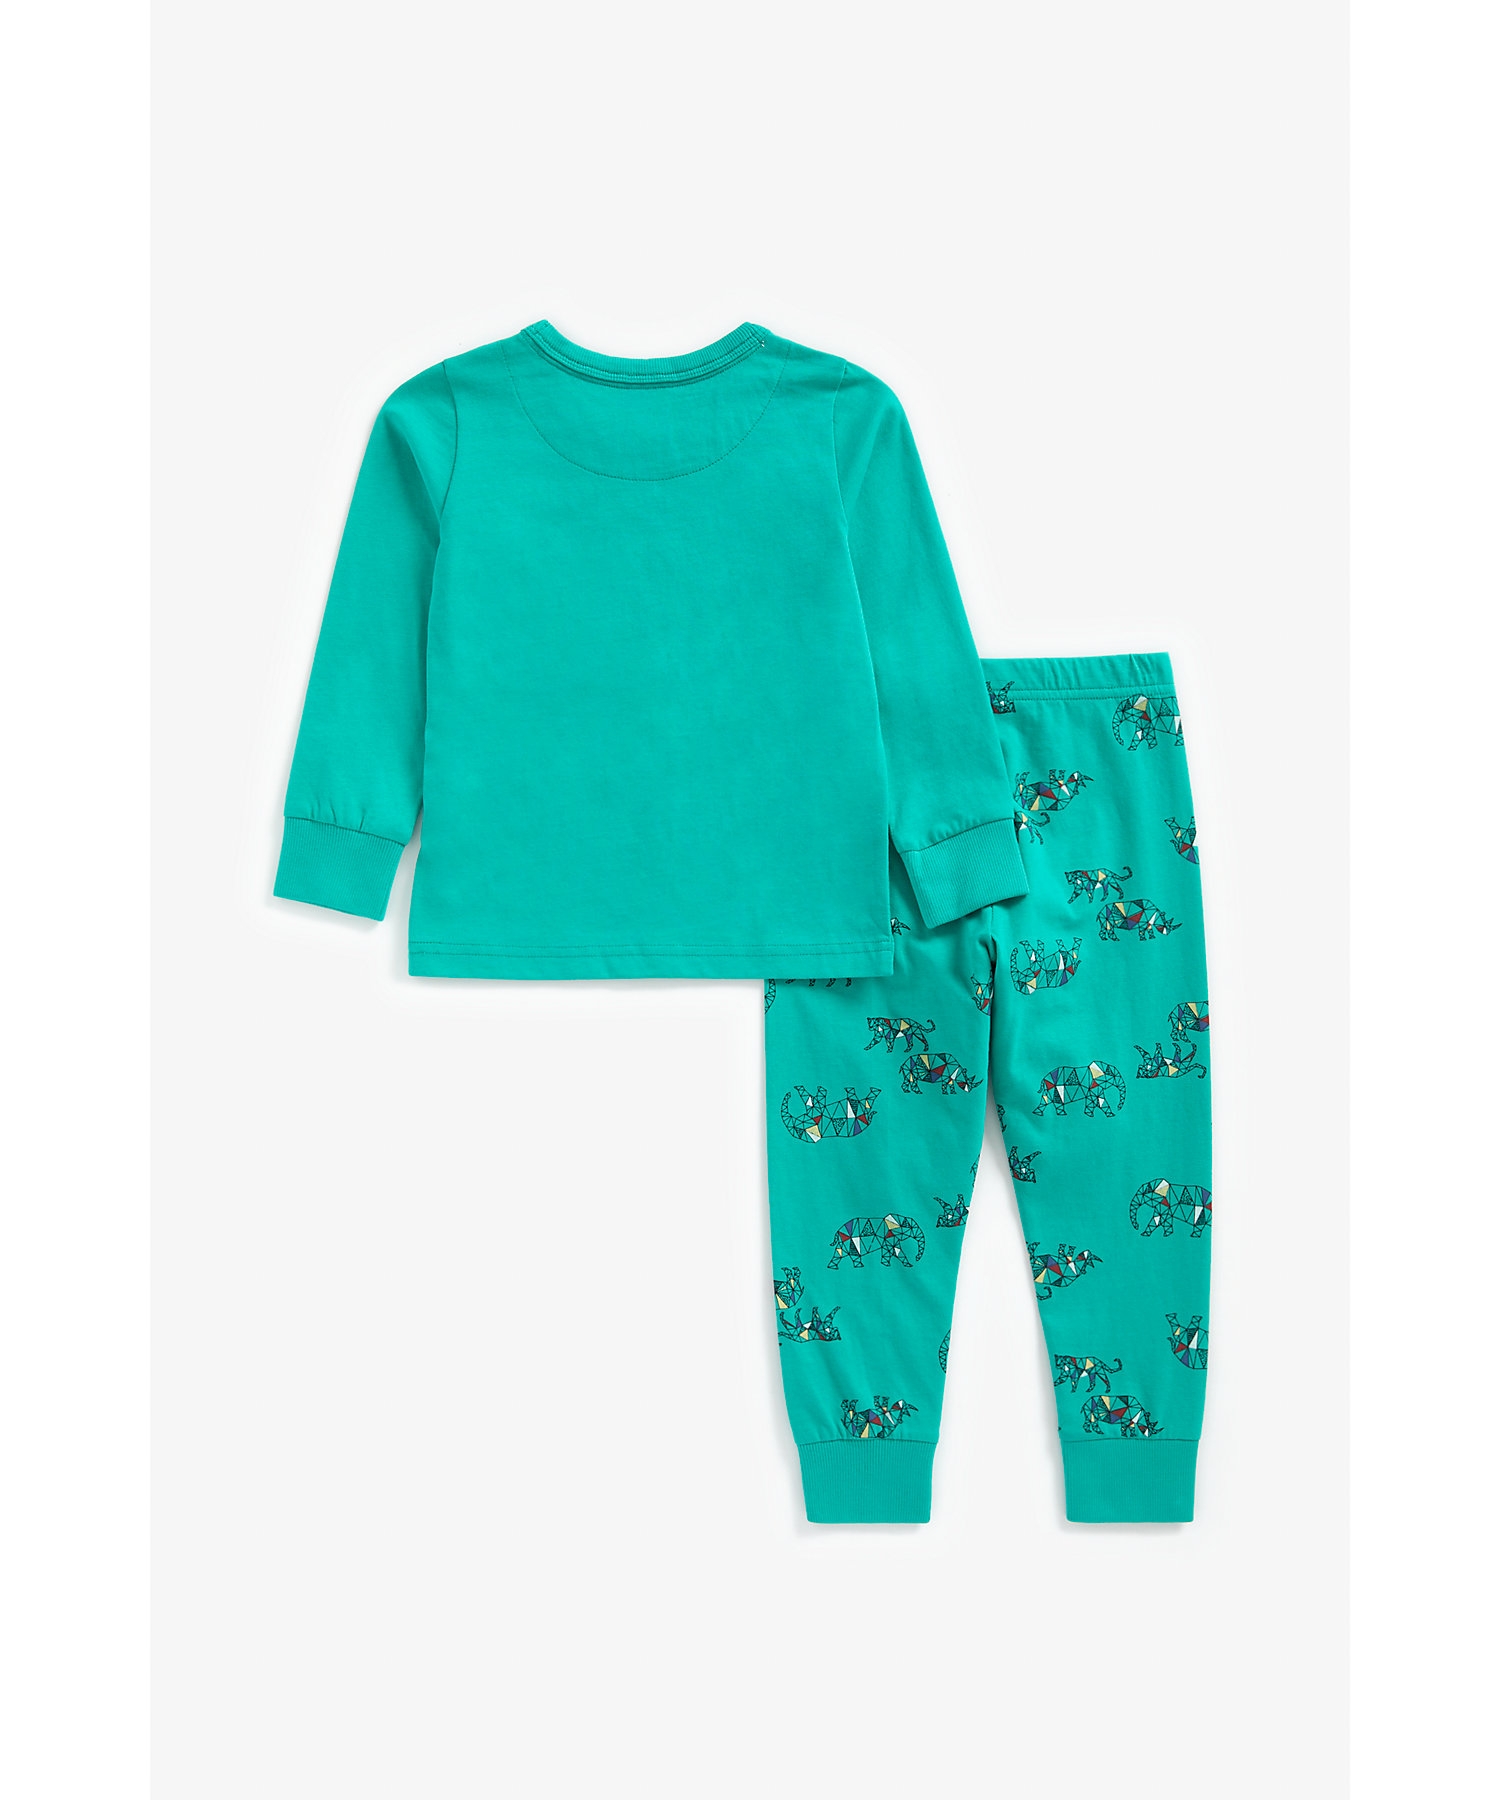 Mothercare | Boys Full Sleeves Pyjama Set Geo Safari Print - Teal 1